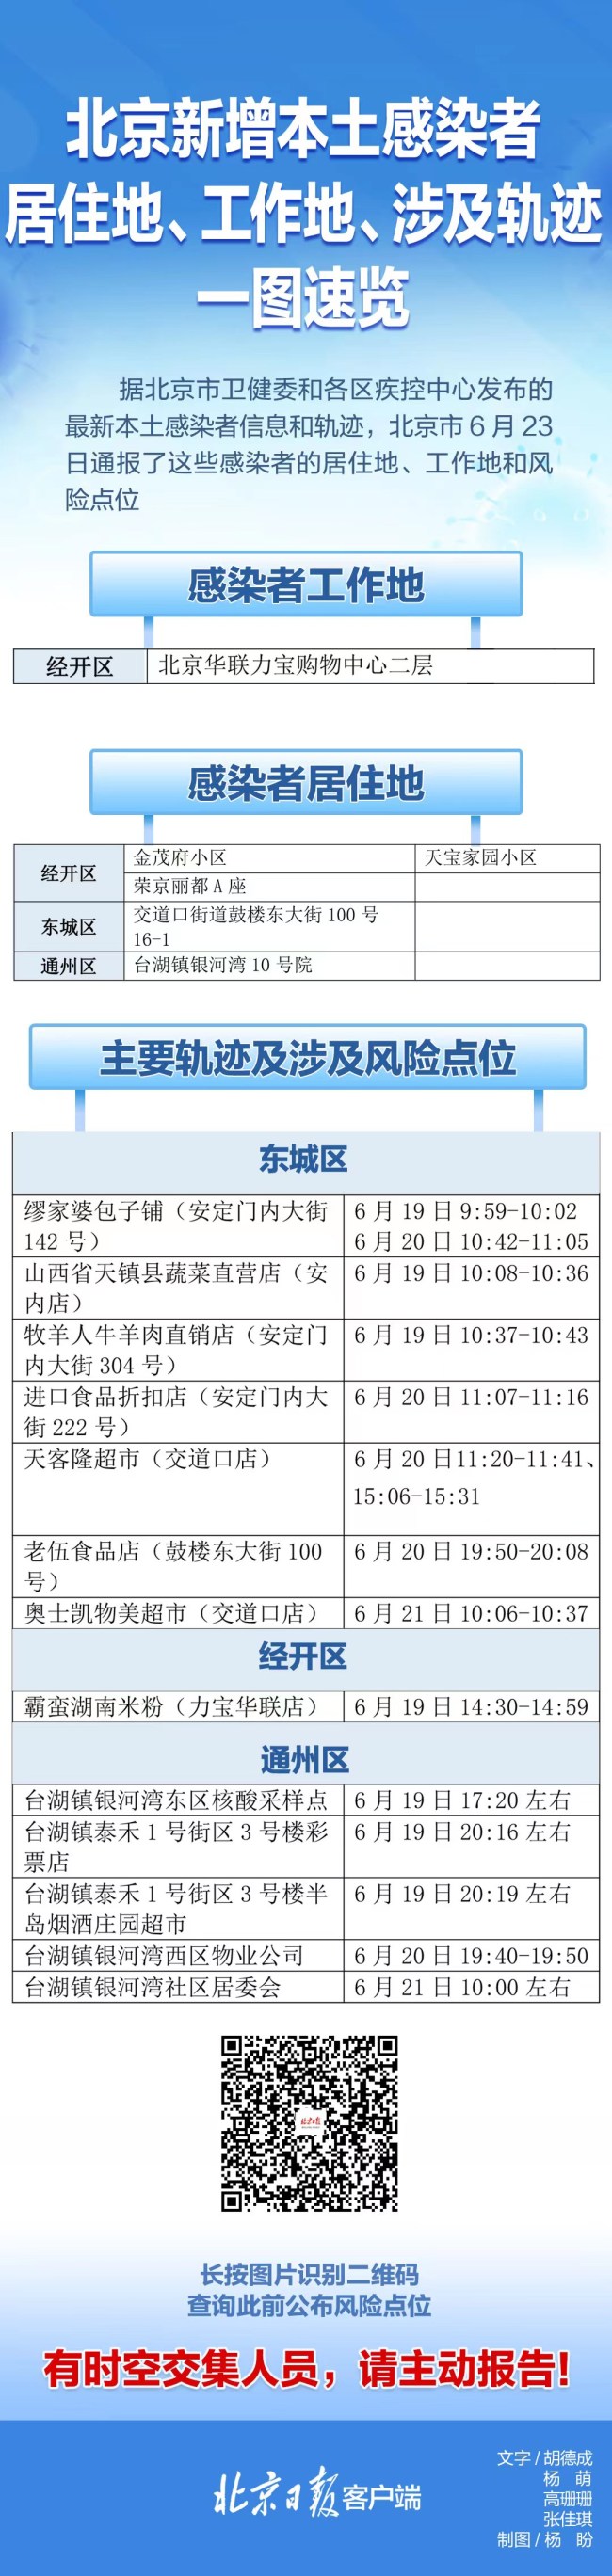 北京23日通报感染者居住地、风险点一图速览